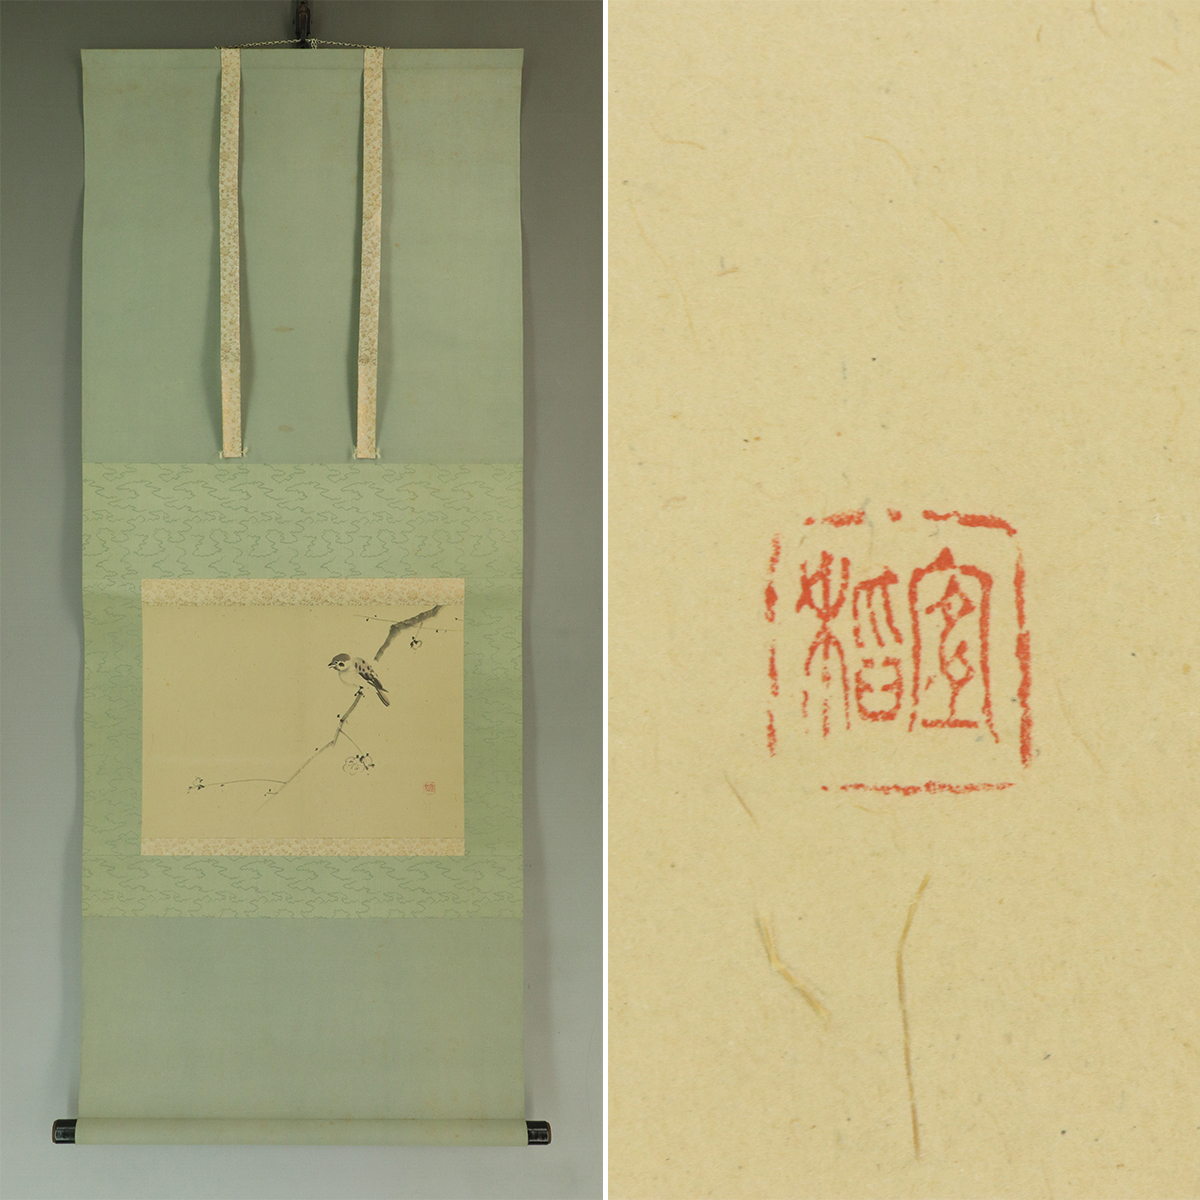 [Authentique] Yoshina Morimura [Prune et Moineau] ◆Livre papier◆Parchemin suspendu u06195b, Peinture, Peinture japonaise, Fleurs et oiseaux, Faune